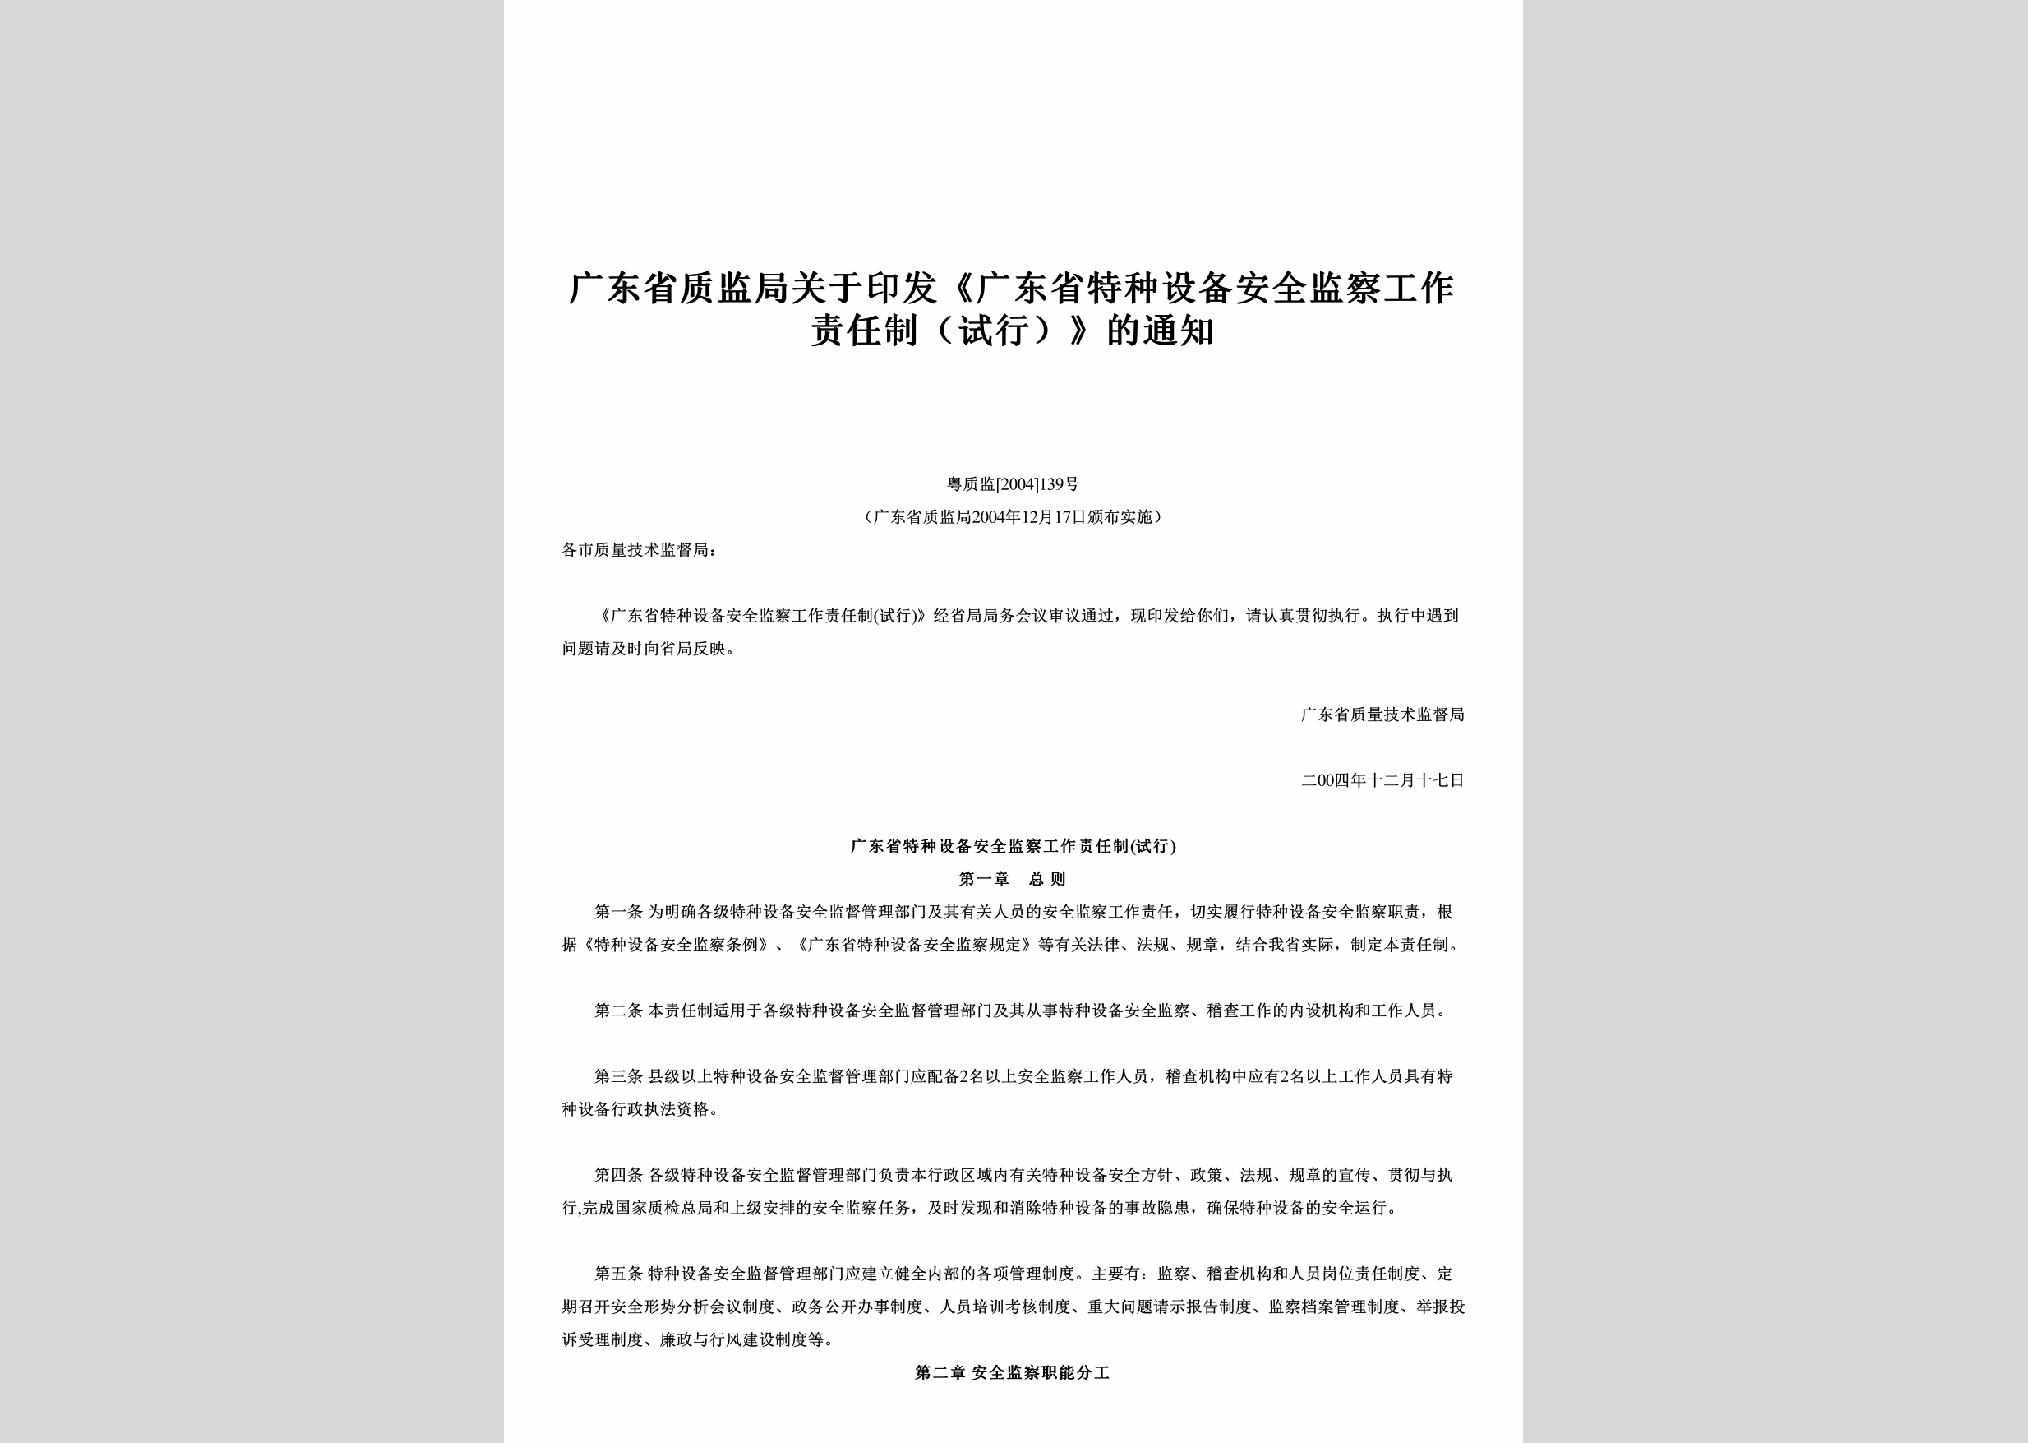 粤质监[2004]139号：关于印发《广东省特种设备安全监察工作责任制（试行）》的通知